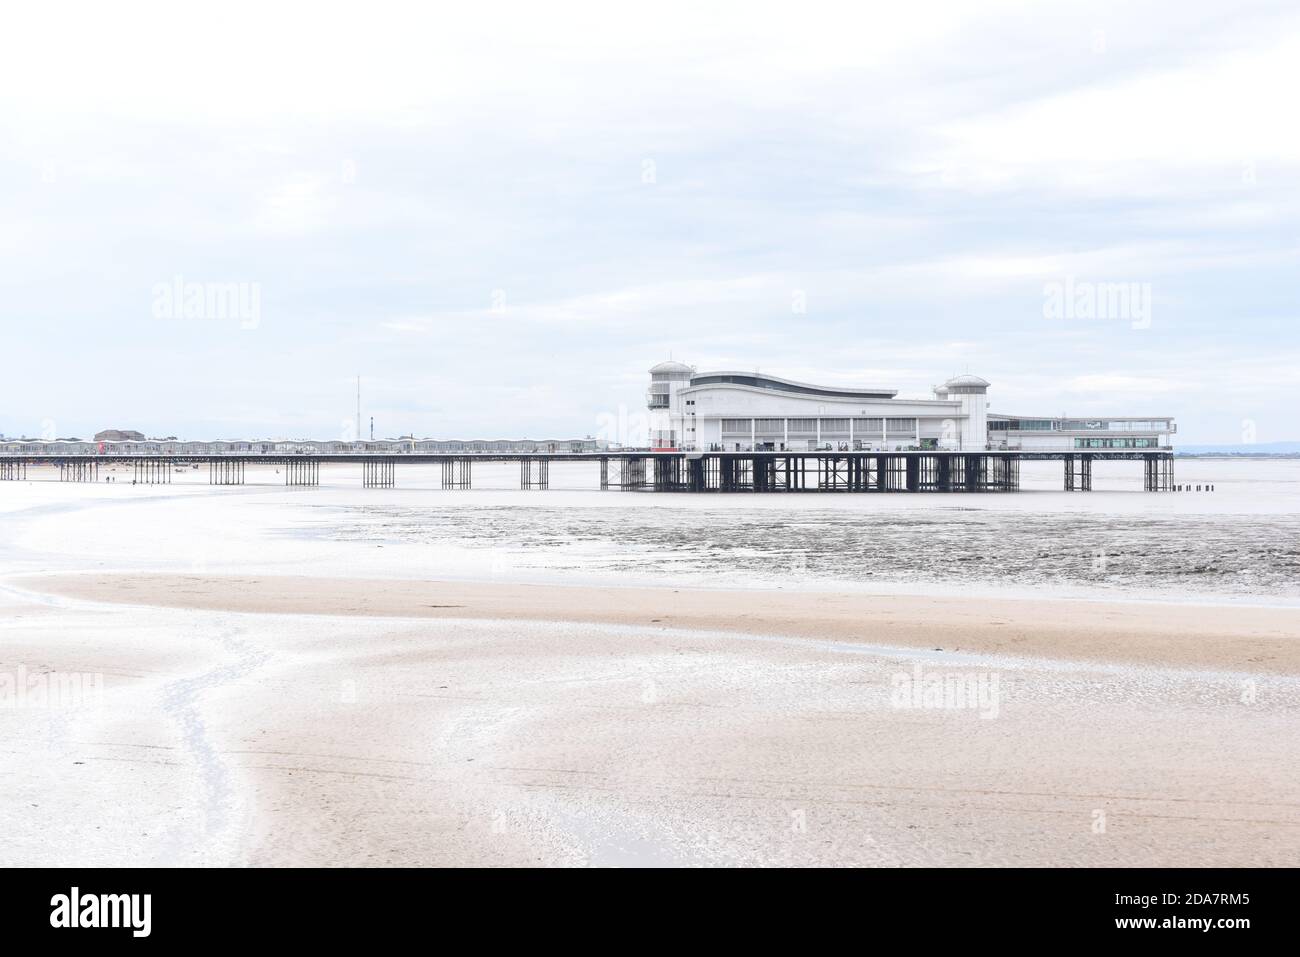 La célèbre jetée de Weston-super-mare se trouve à travers une plage vide la mer dans cette photo prise sur un automne couvert jour Banque D'Images